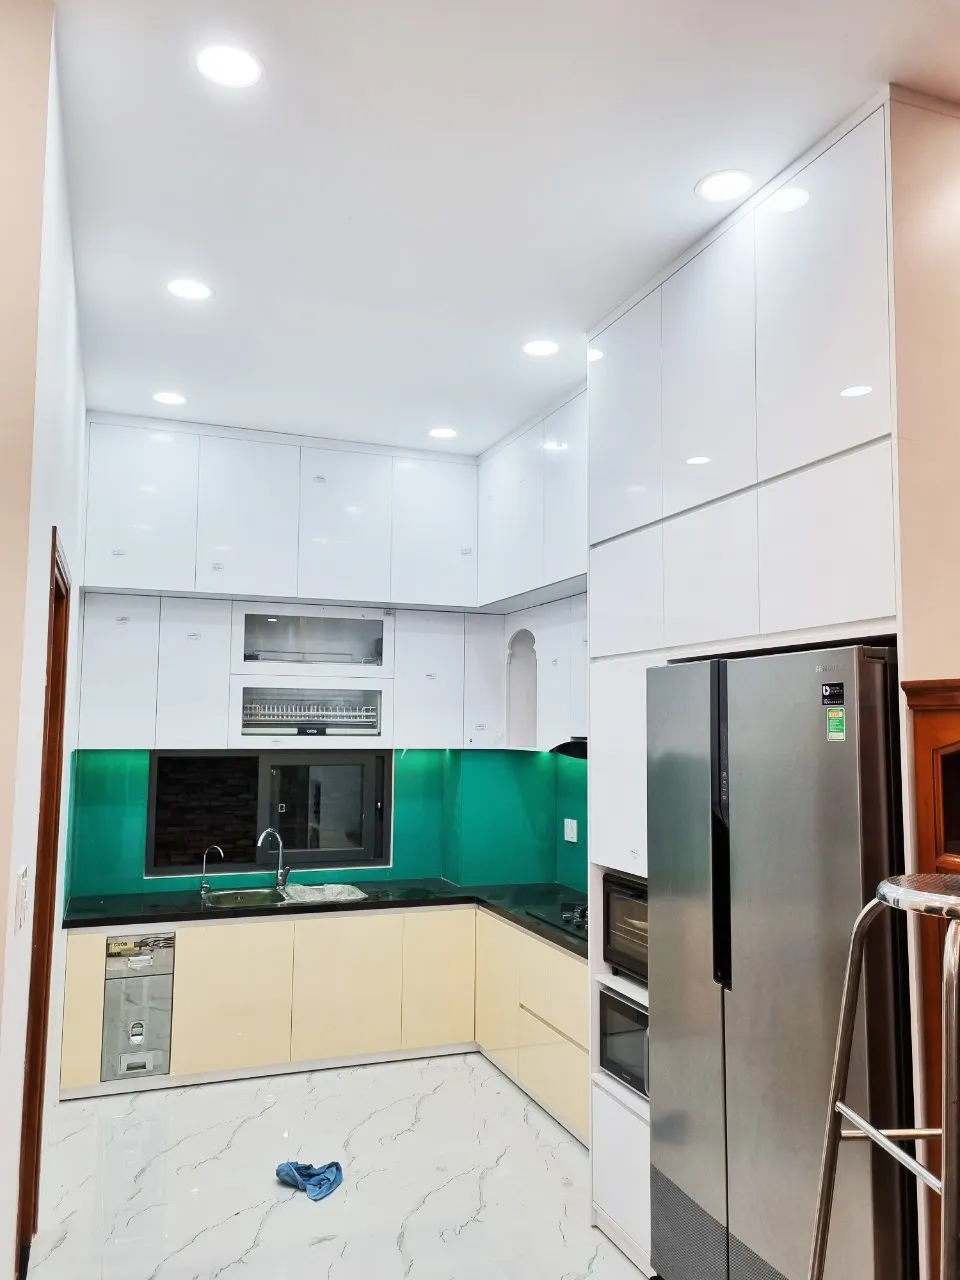 Hoàn thiện nội thất phòng bếp nhà phố Vĩnh Viễn Quận 10 mang phong cách Modern Hiện đại